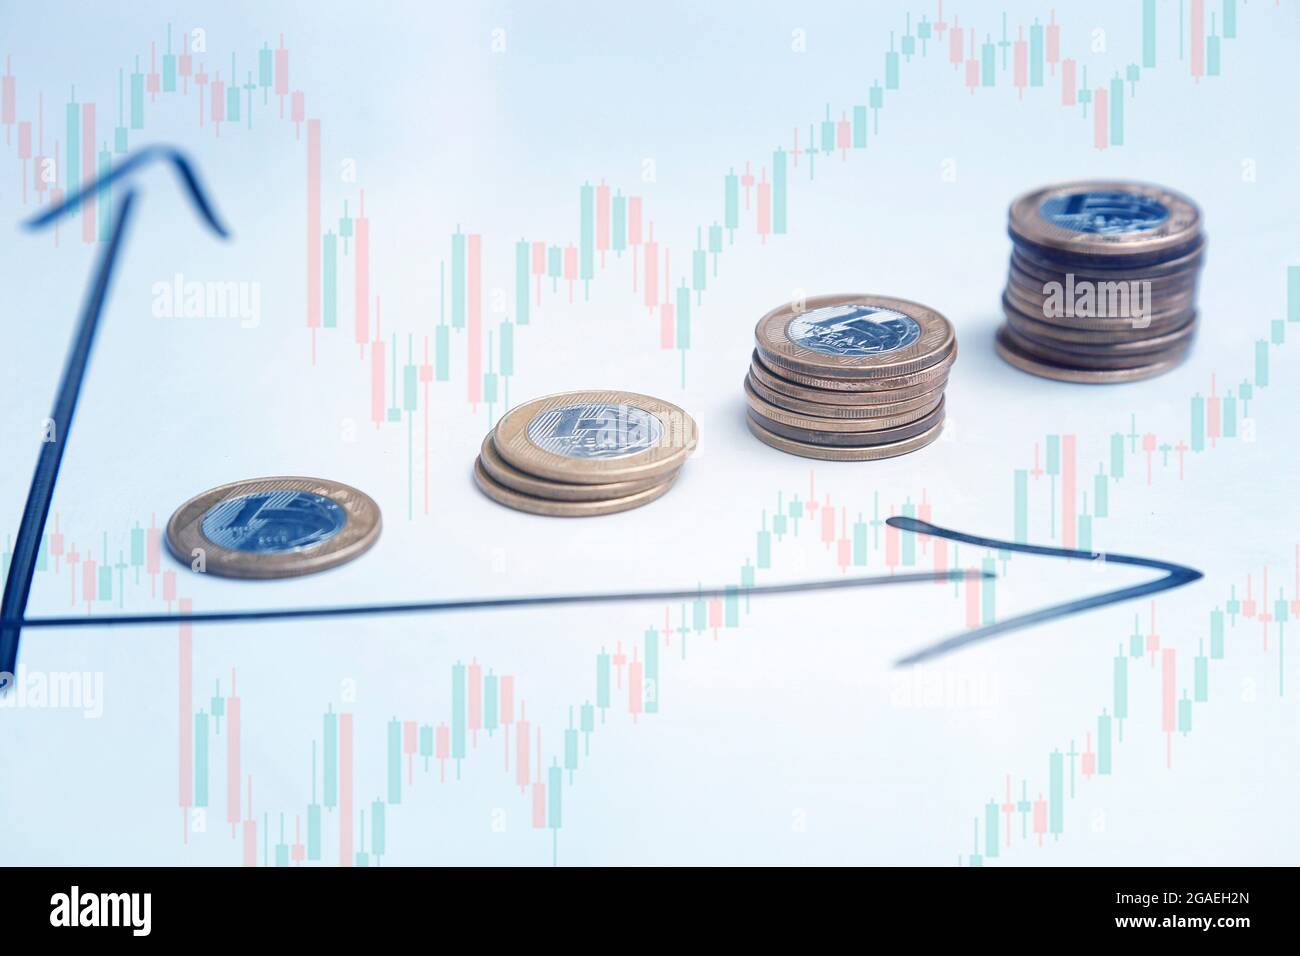 Münzen auf weißem Hintergrund und Richtungspfeilen, die das Wachstum von Zeit und Gewinn anzeigen, sowie Candlestick - Finanz-, Einkommens- und Zinskonzept Stockfoto